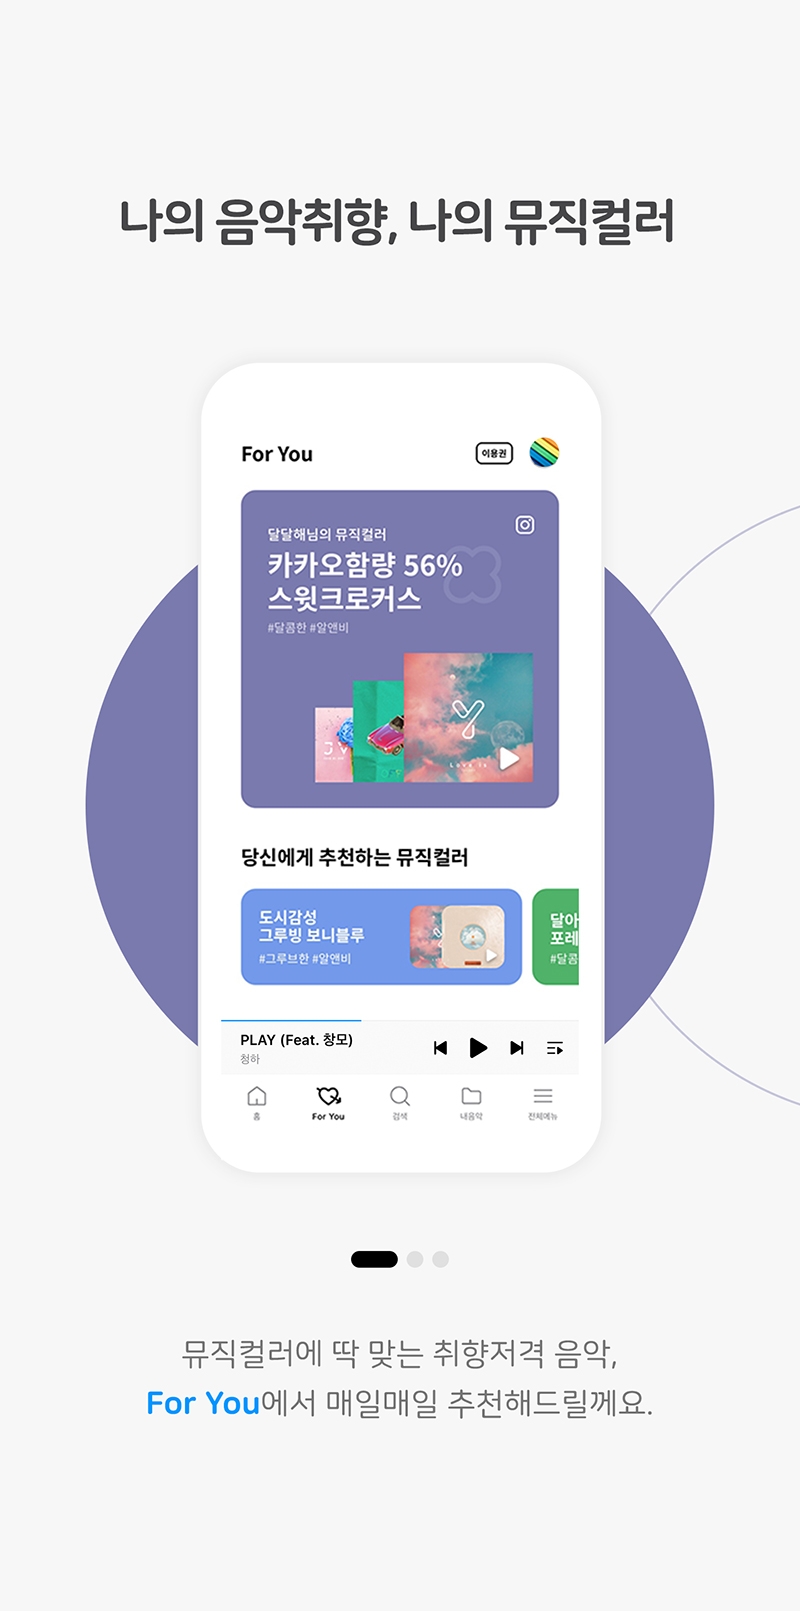 지니앱 5.0 ‘For You’ 뮤직컬러 큐레이션 화면/사진=지니뮤직